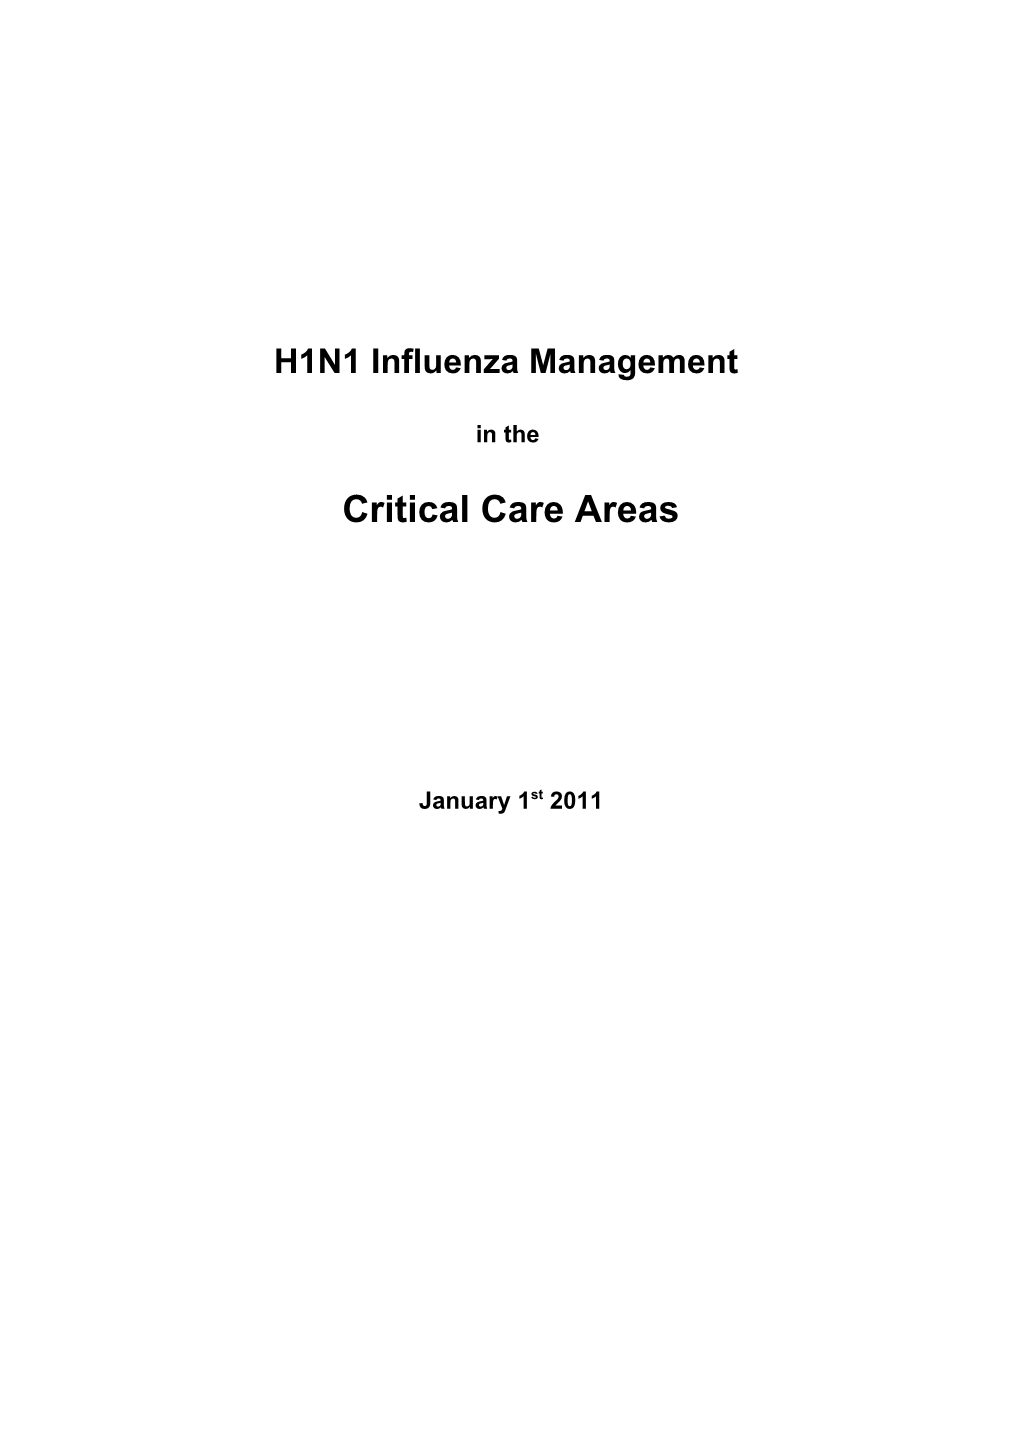 H1N1 Influenza Management in the ICU / HDU